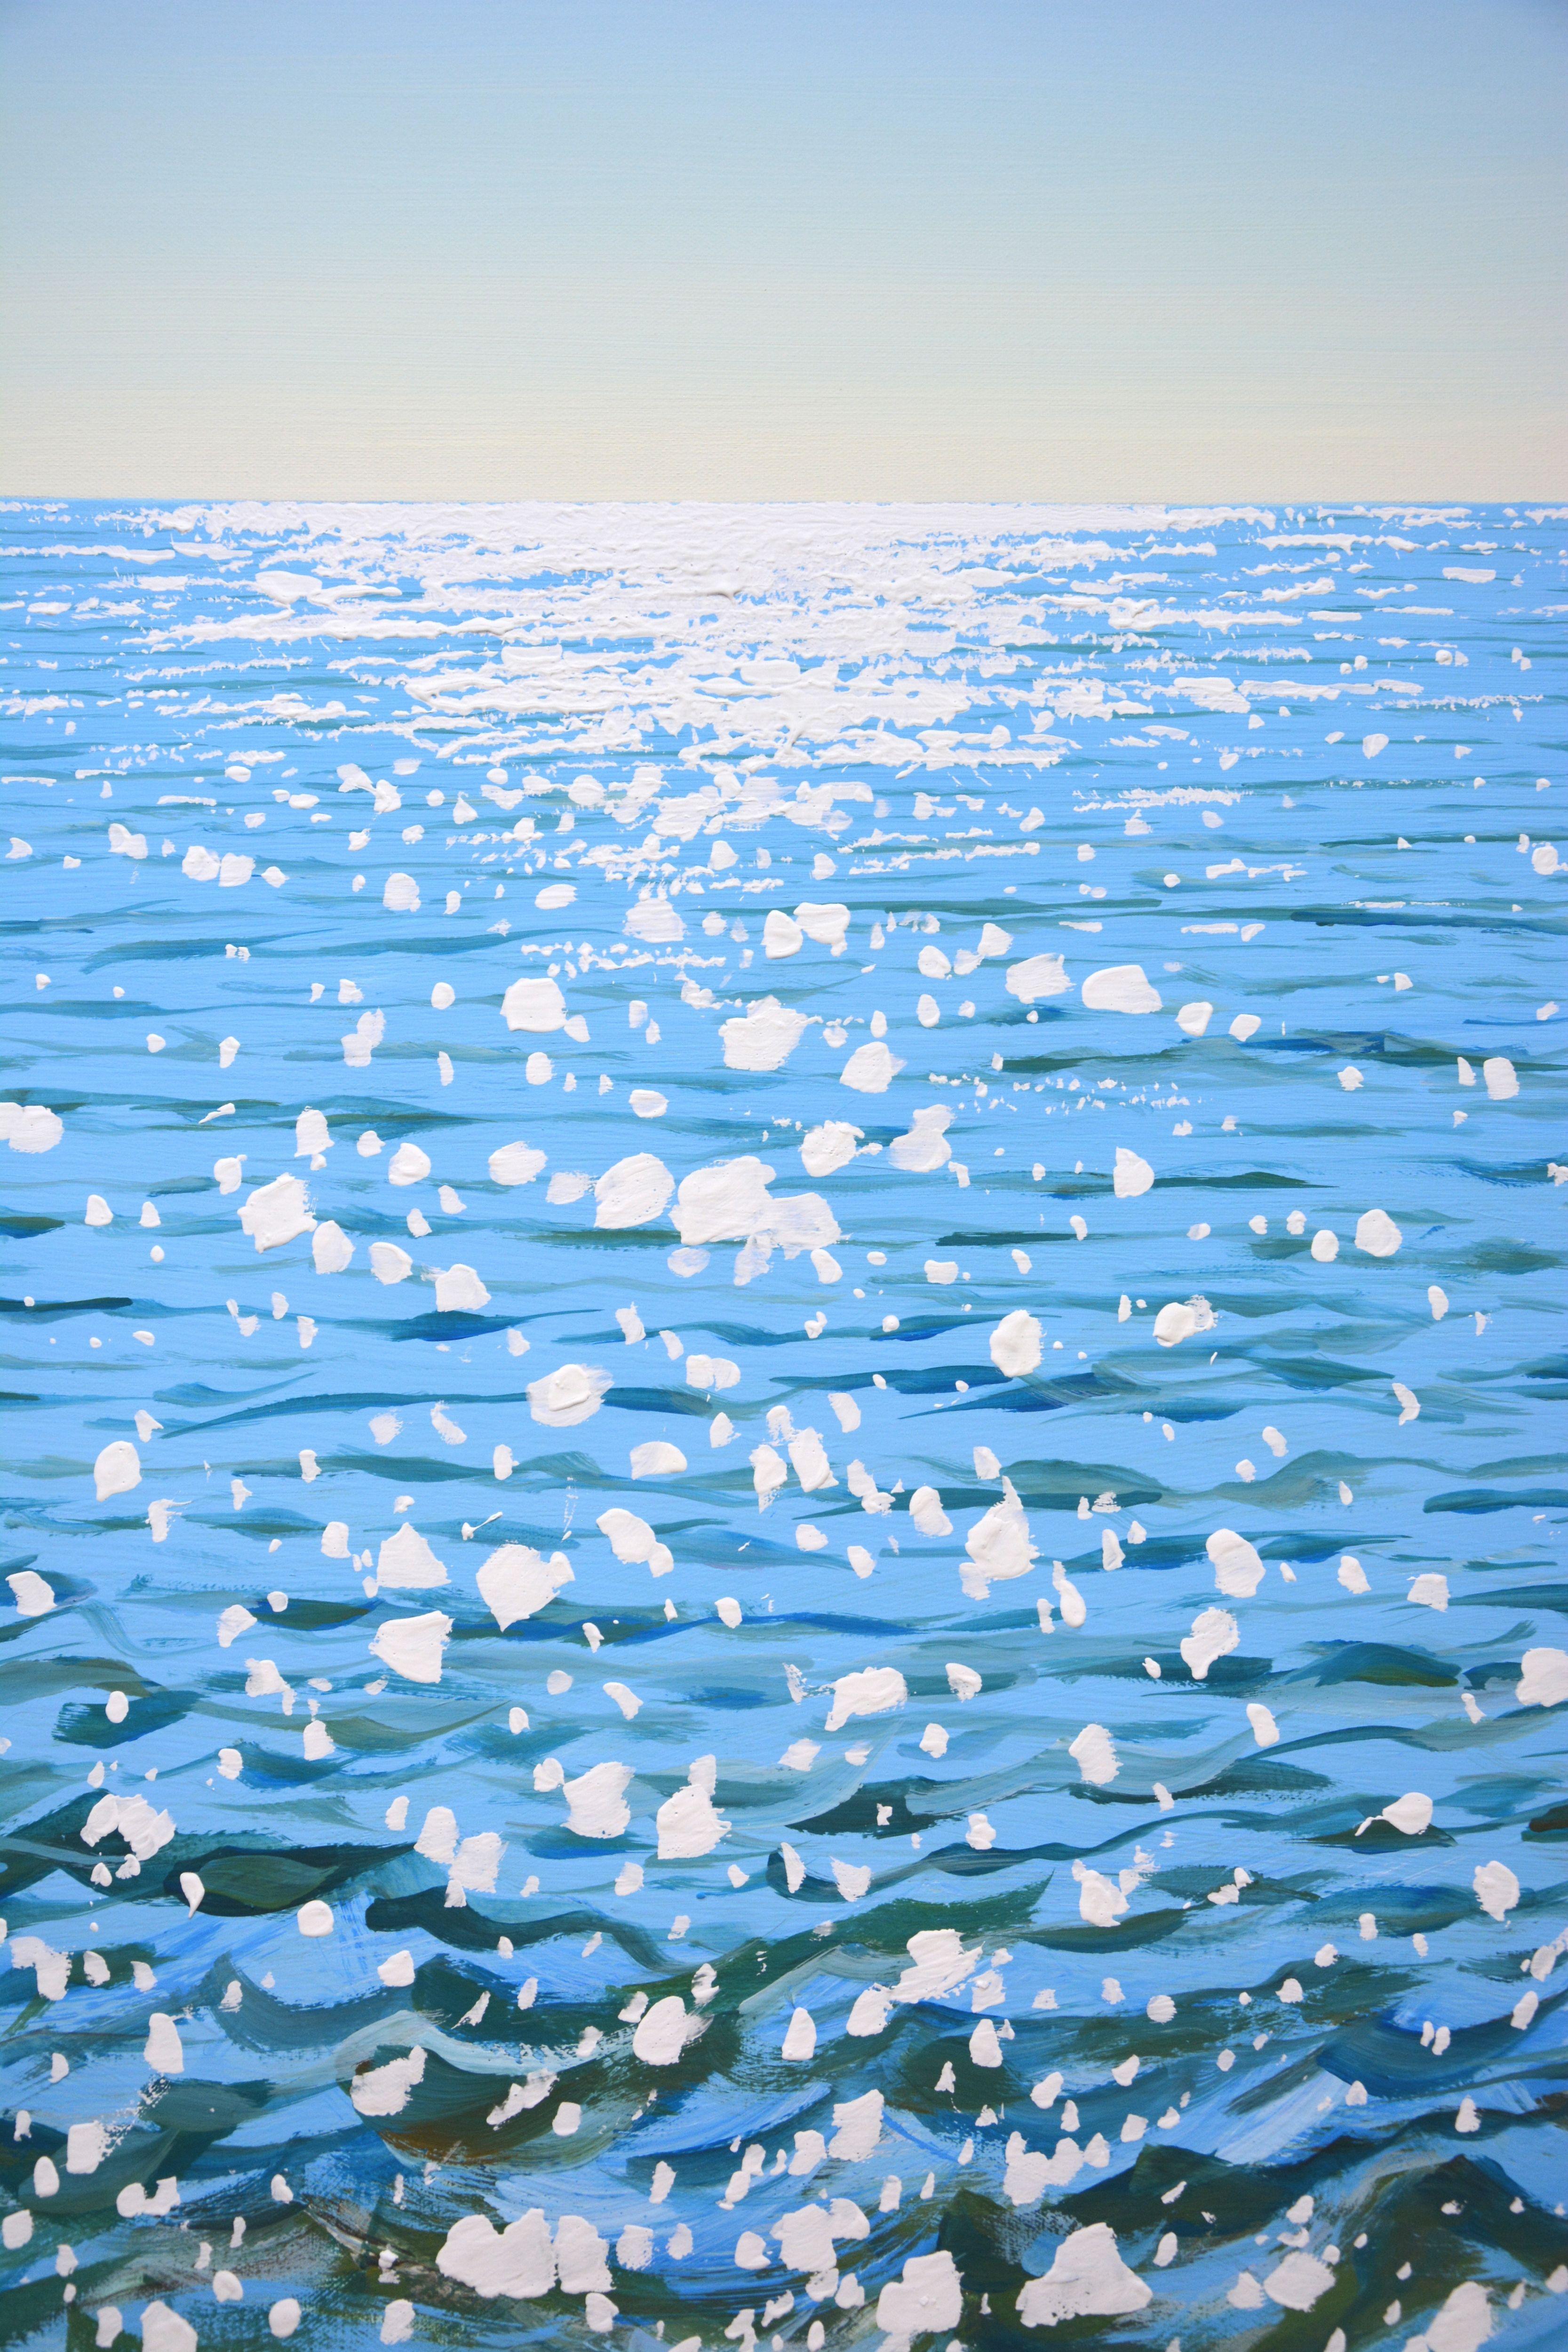 Eau bleue. Éblouissement. L'océan, les étincelles du soleil sur l'eau, le ciel clair, les vagues sans cil créent une atmosphère de détente et de romantisme. Réalisé dans le style du réalisme, la palette bleu clair, blanc souligne l'énergie de l'eau.